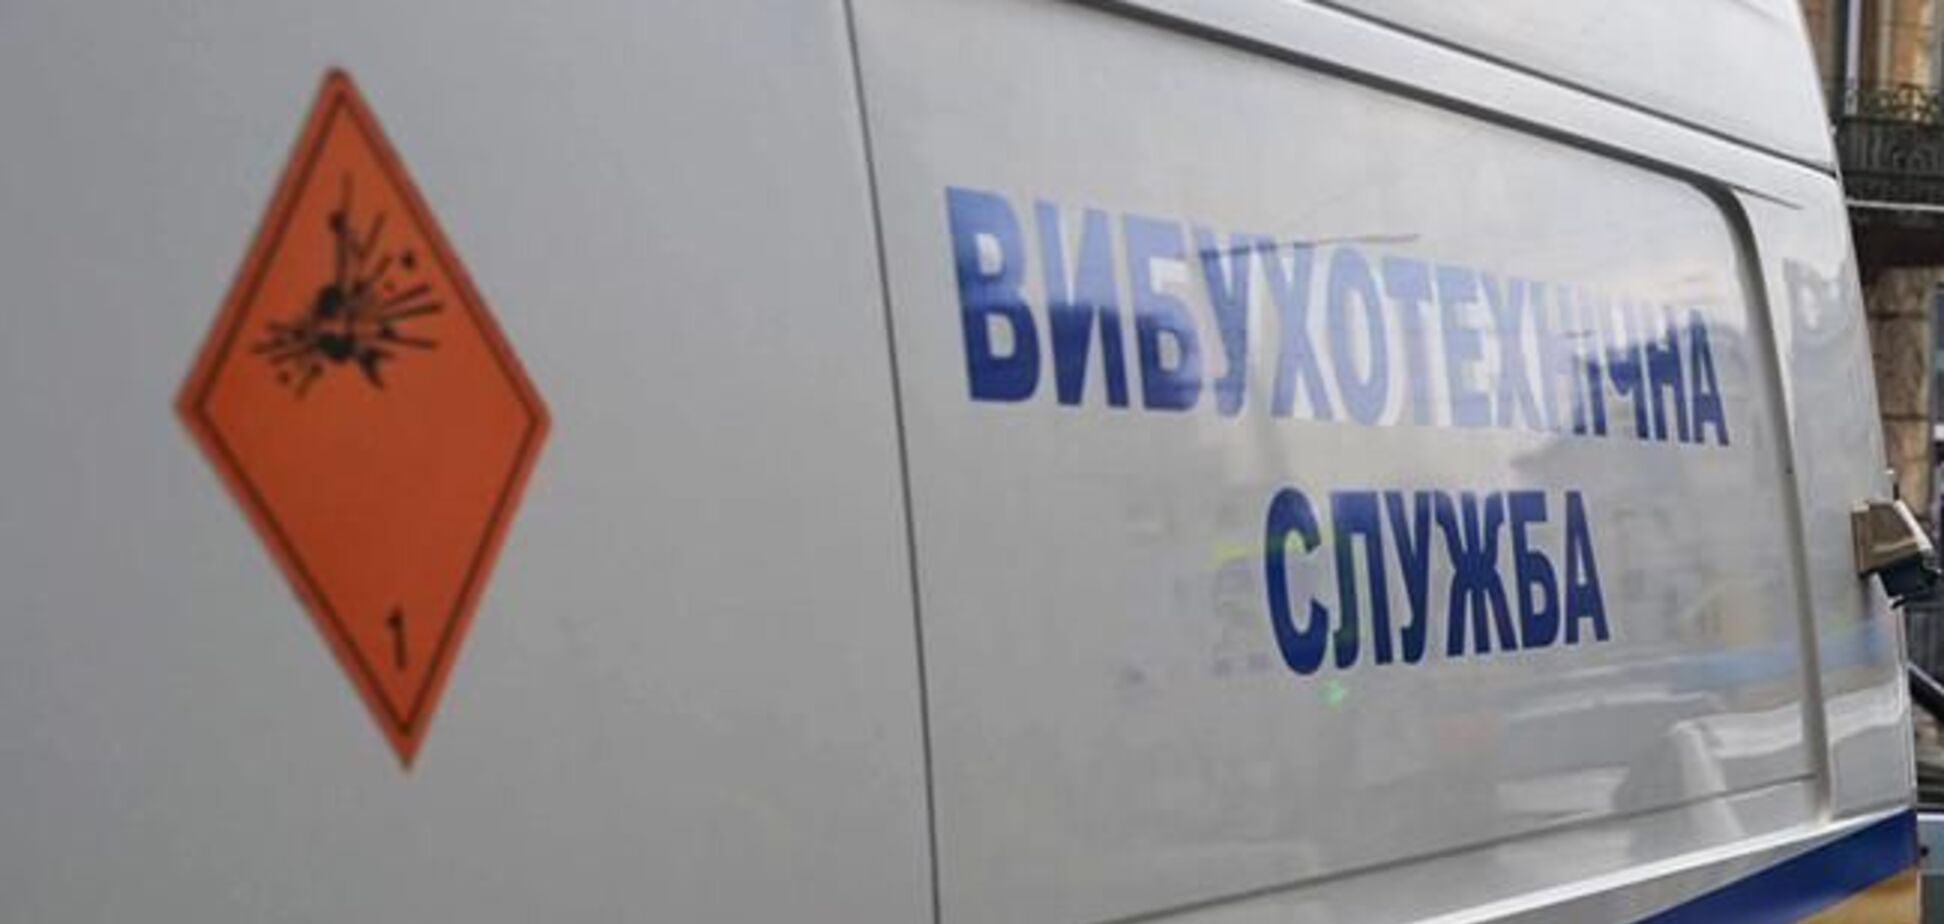 Хотел взорвать: в Чернигове произошло ЧП из-за выборов